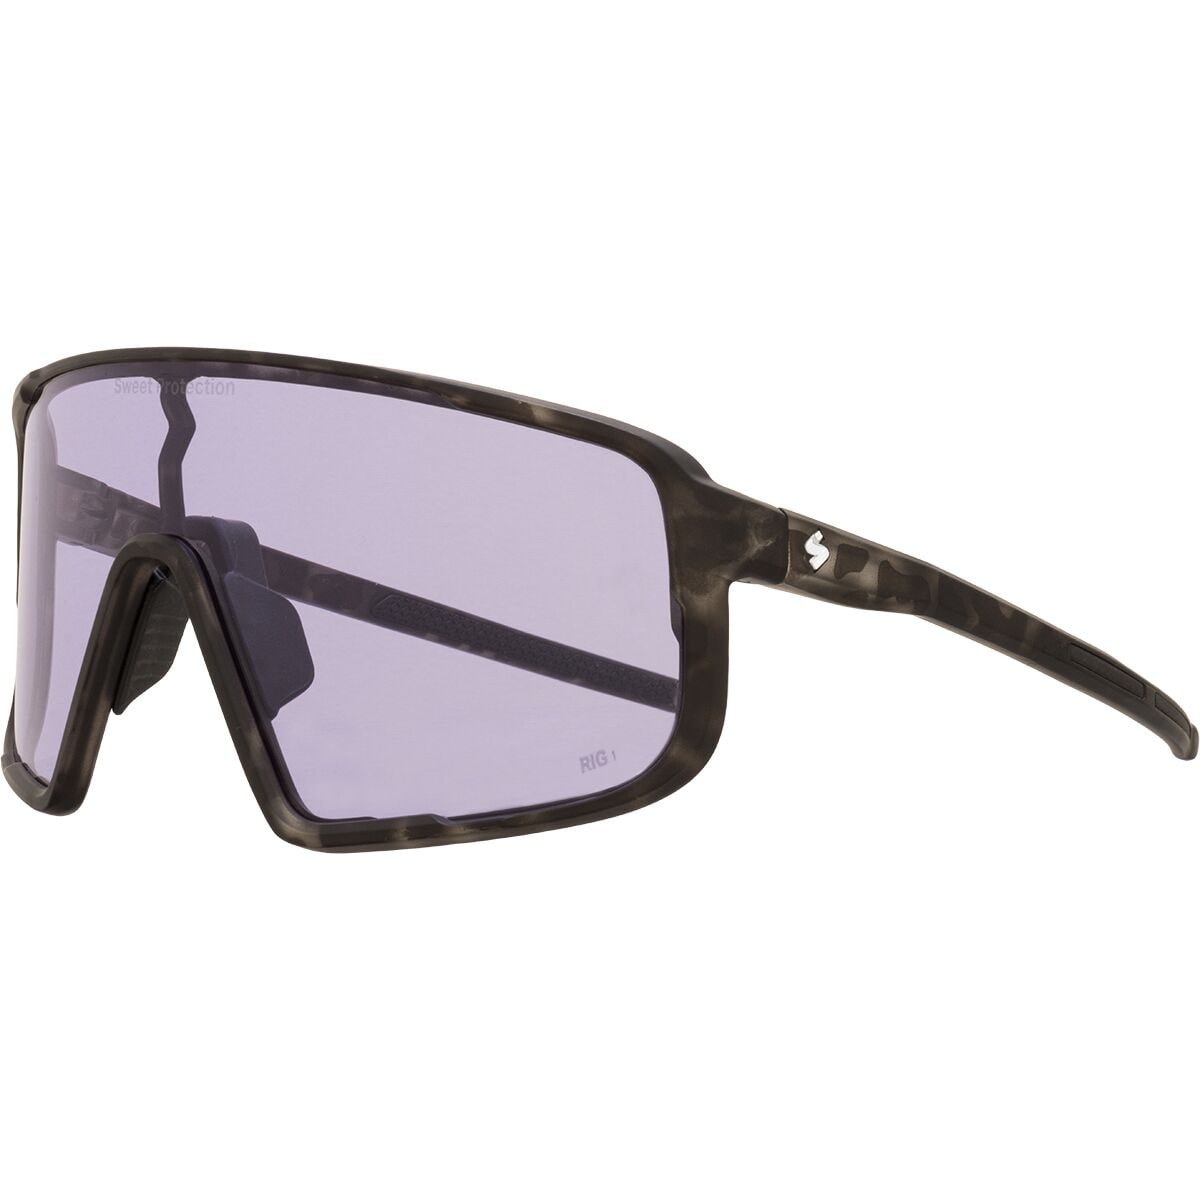 Солнцезащитные очки memento rig reflect Sweet Protection, цвет rig quartz/matte crystal black camo